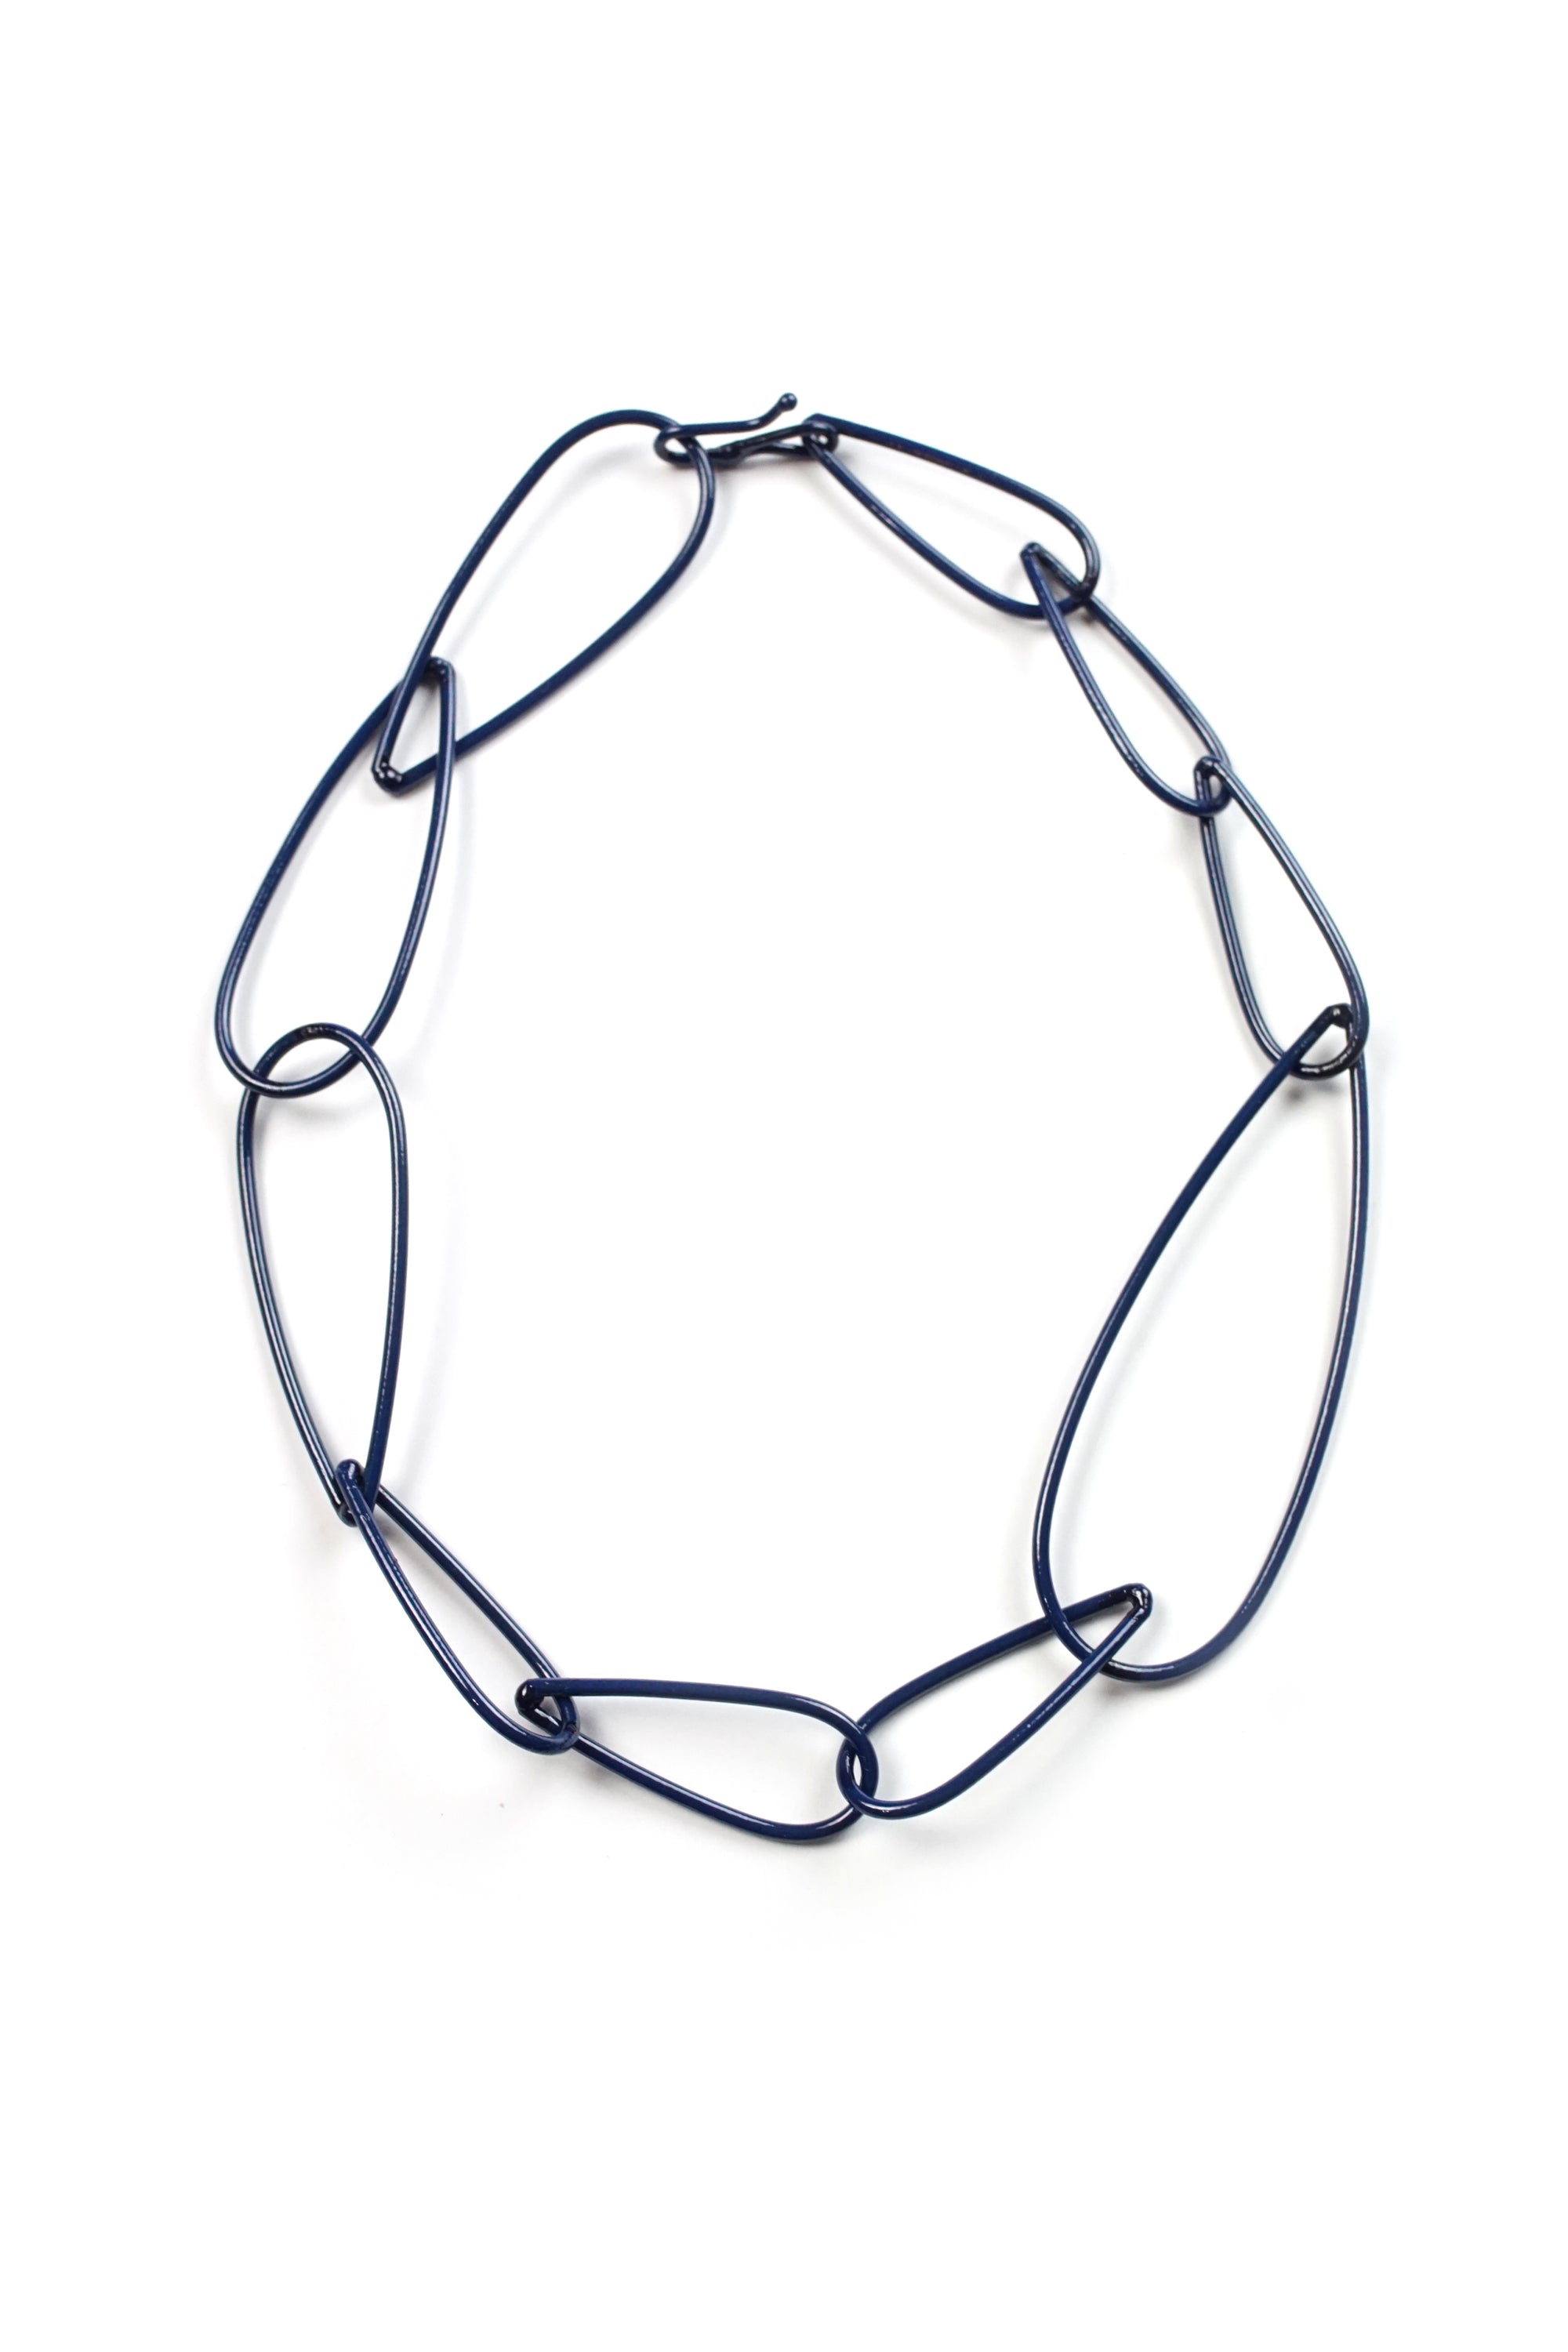 Modular Necklace No. 2